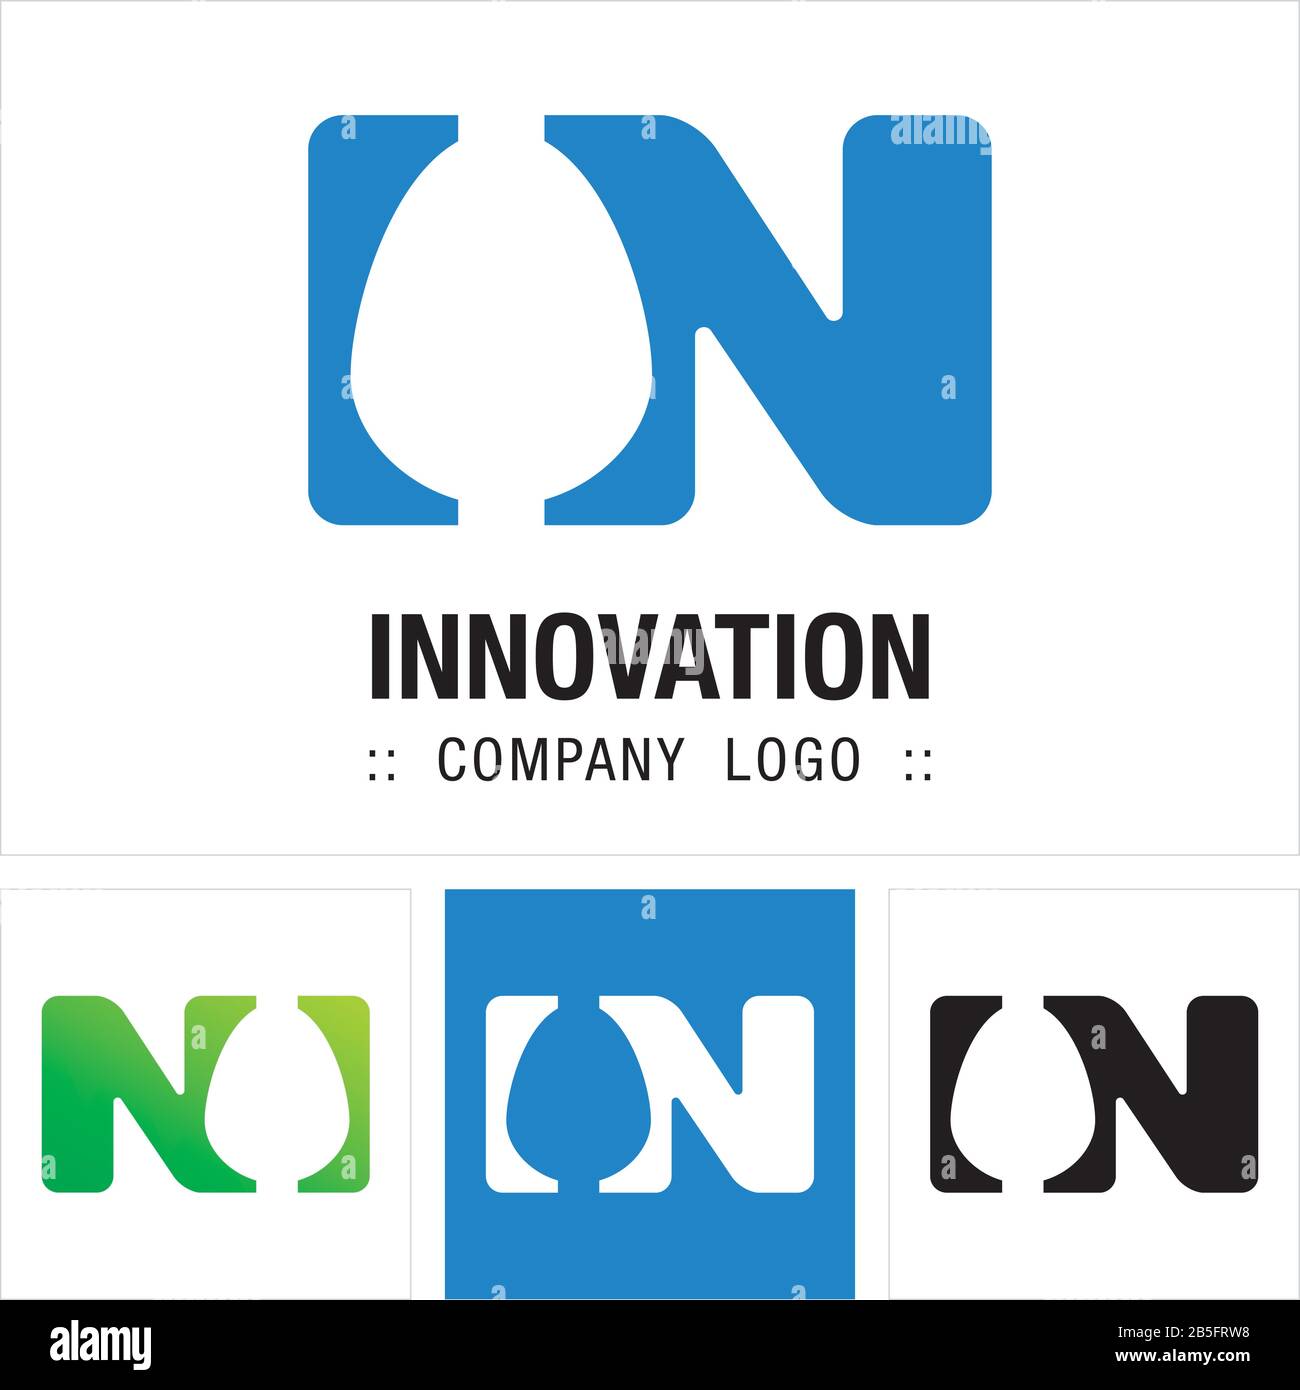 Logo (Logo) Di Innovation (Egg) Vector Symbol Company. La Tipografia Con L'Illustrazione Negativa Dell'Icona Dell'Uovo. Elegante Concetto Di Identità Design Idea Marchio. Illustrazione Vettoriale